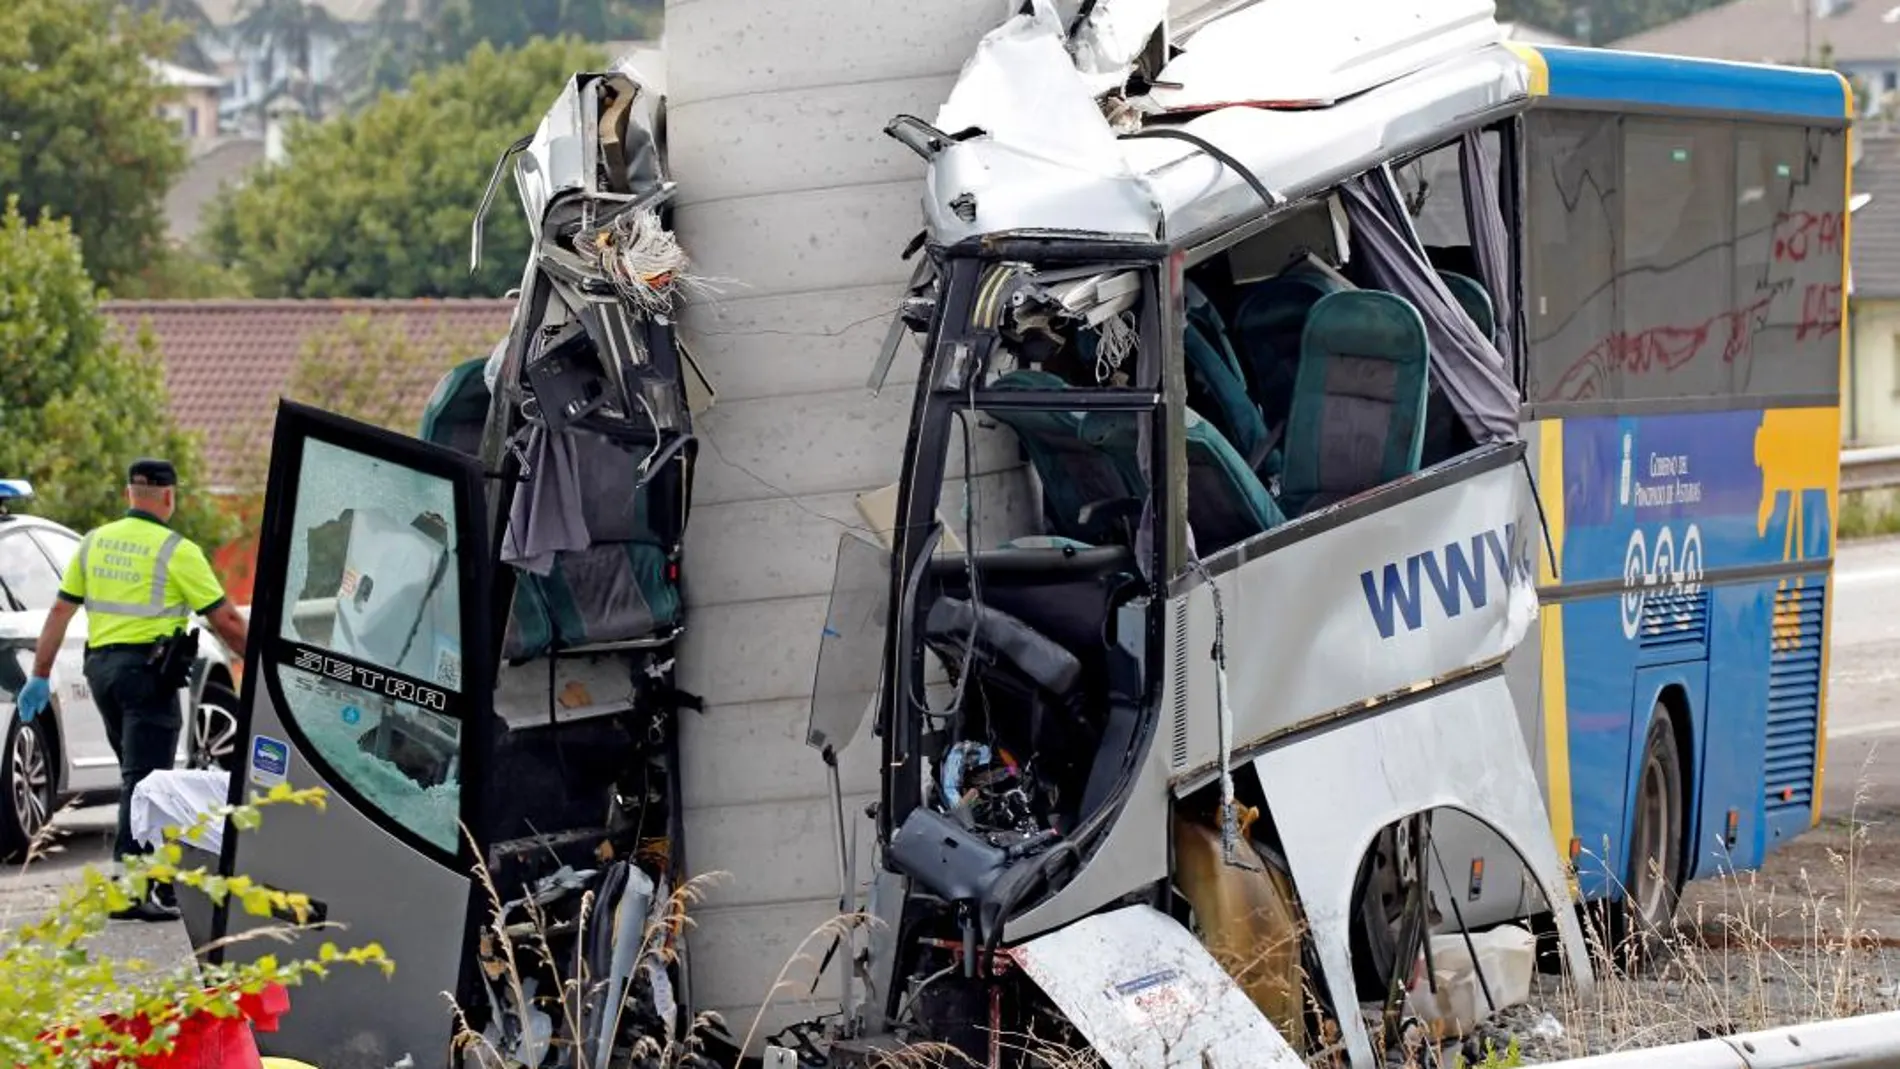 Estado en el que ha quedado el autobús de línea de la compañía Alsa tras colisionar contra un pilar de cemento de un viaducto en obras / Foto: Efe